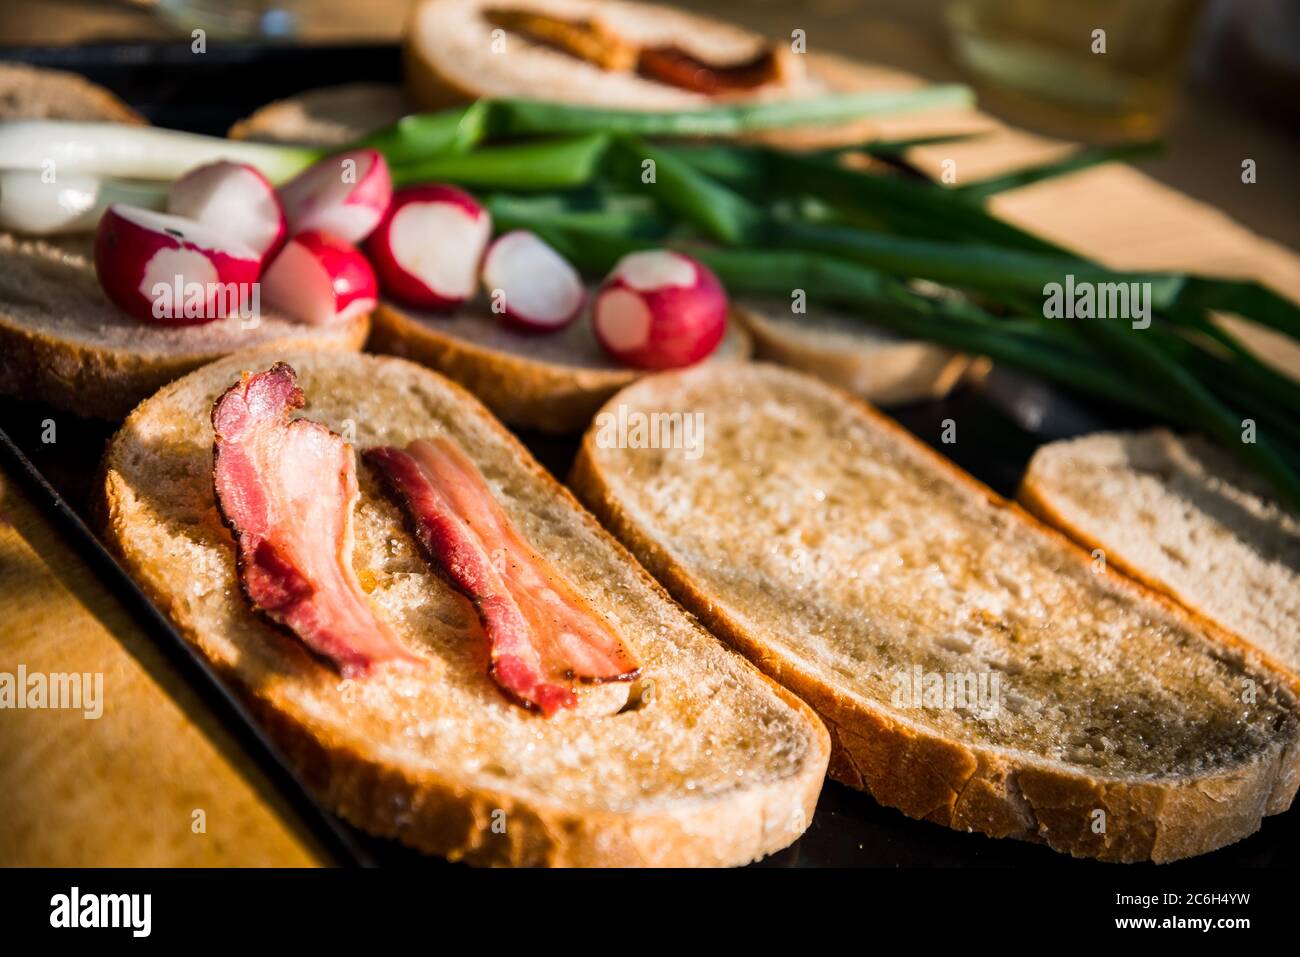 Gegrillter Speck auf fettem Brot mit grünen Zwiebeln und frischem Rettich  auf einer ungarischen Sommer Grill-Party. Grillhintergrund Stockfotografie  - Alamy